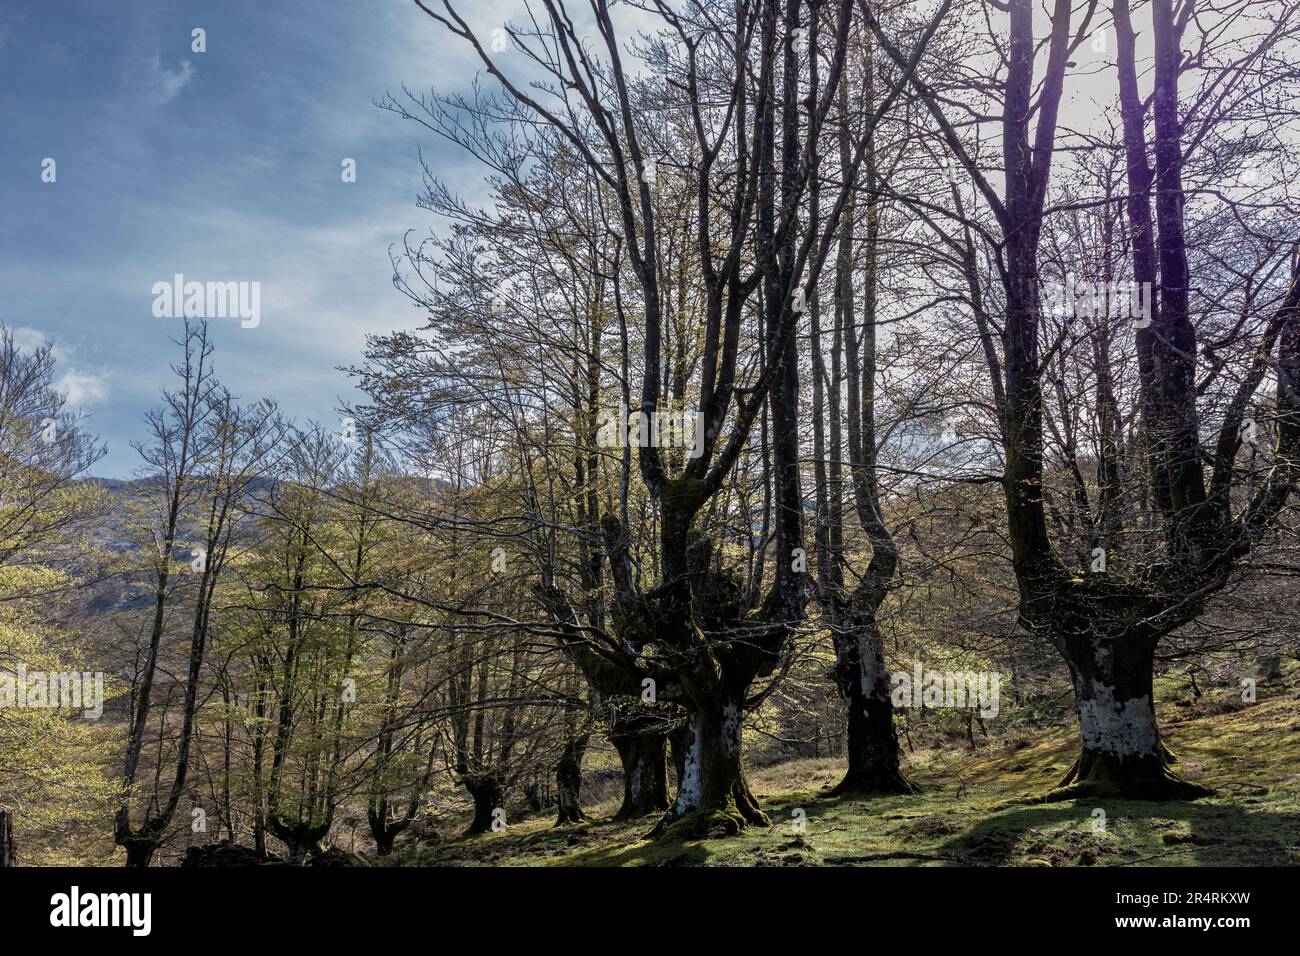 Ruhe in der Natur: Ein ruhiger Tag im sonnenverwöhnten Buchenwald des Baskenlandes Stockfoto